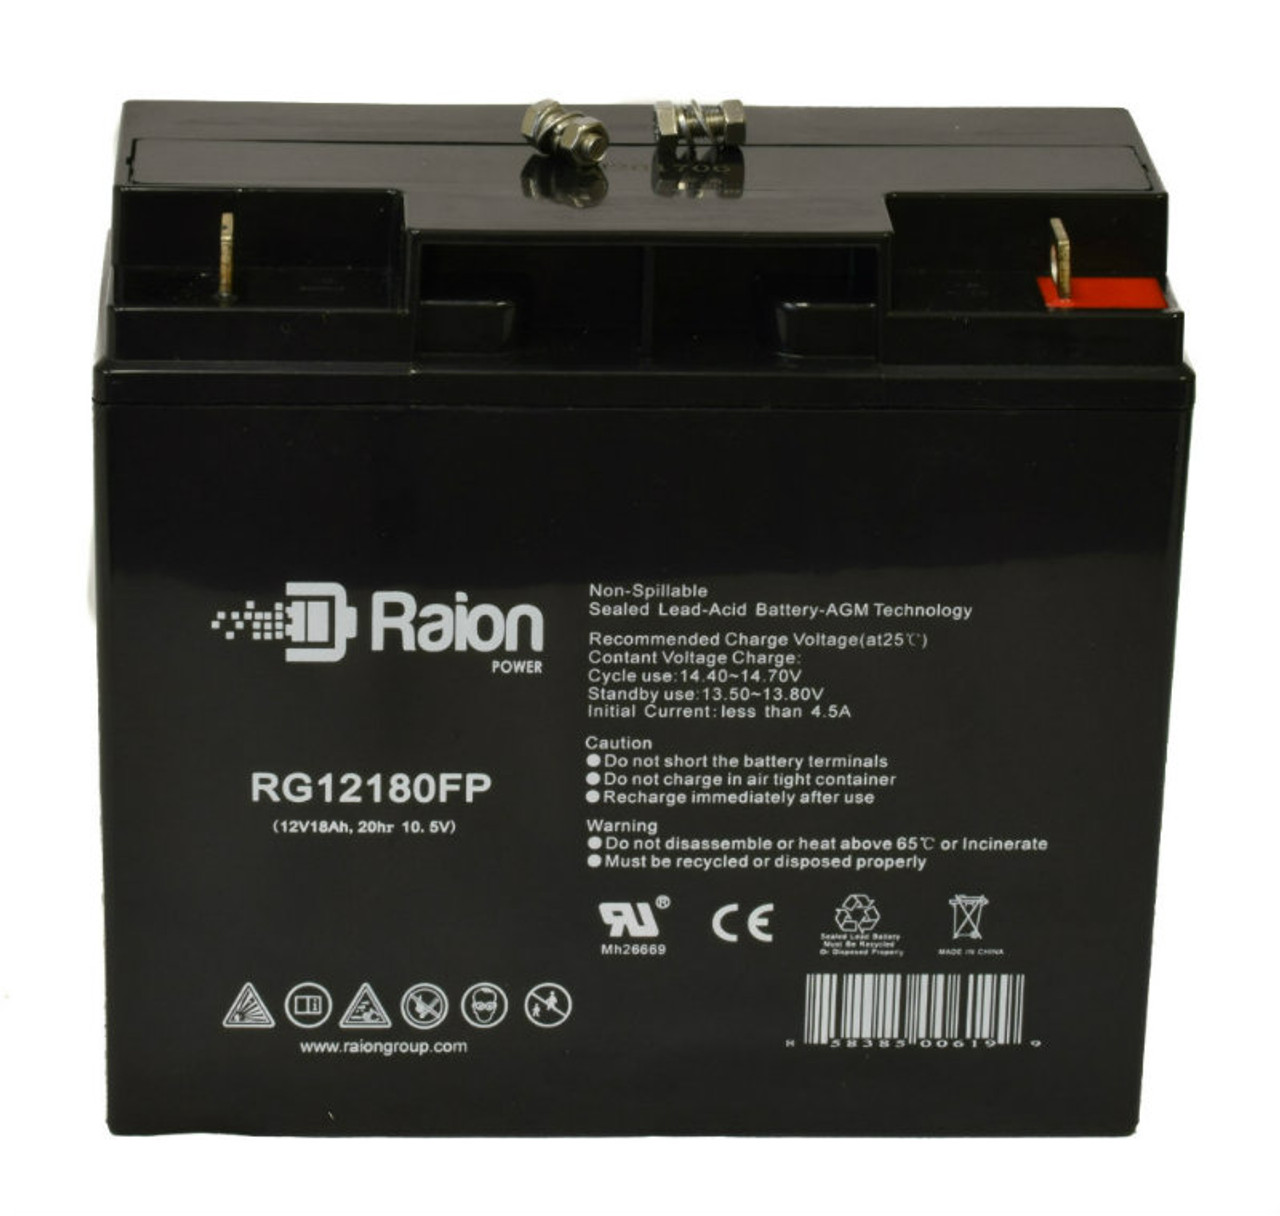 Raion Power RG12180FP 12V 18Ah Lead Acid Battery for Lightalarms CE15CB